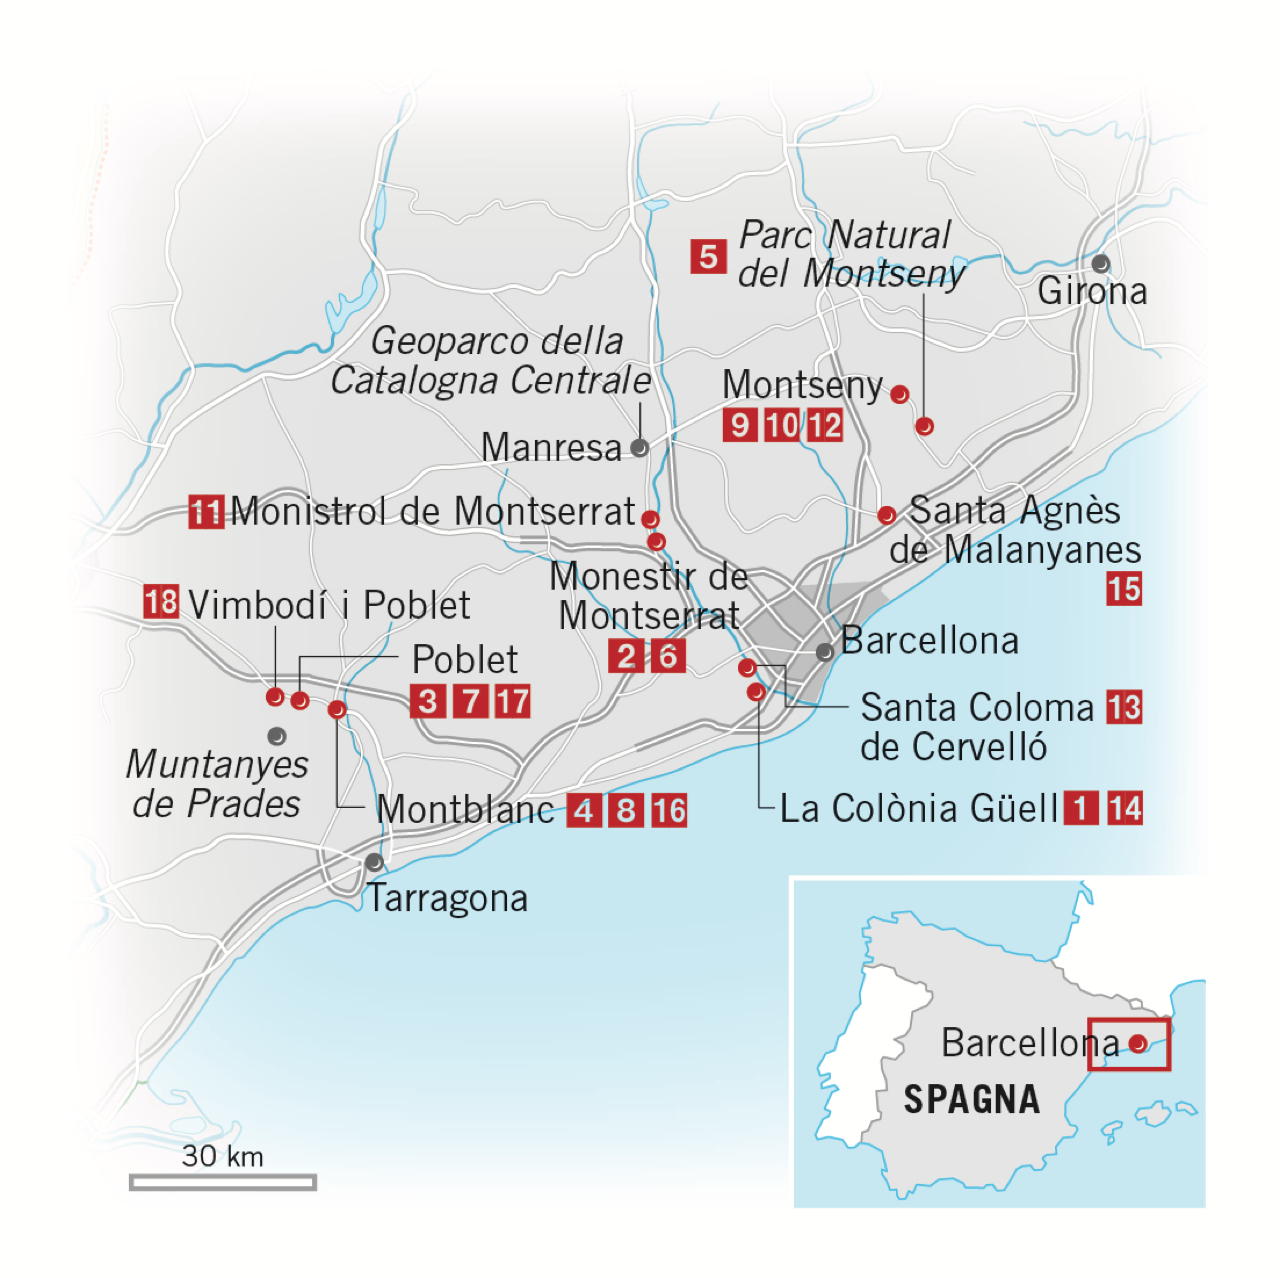 mappa indirizzi cose da visitare nei dintorni di Barcellona